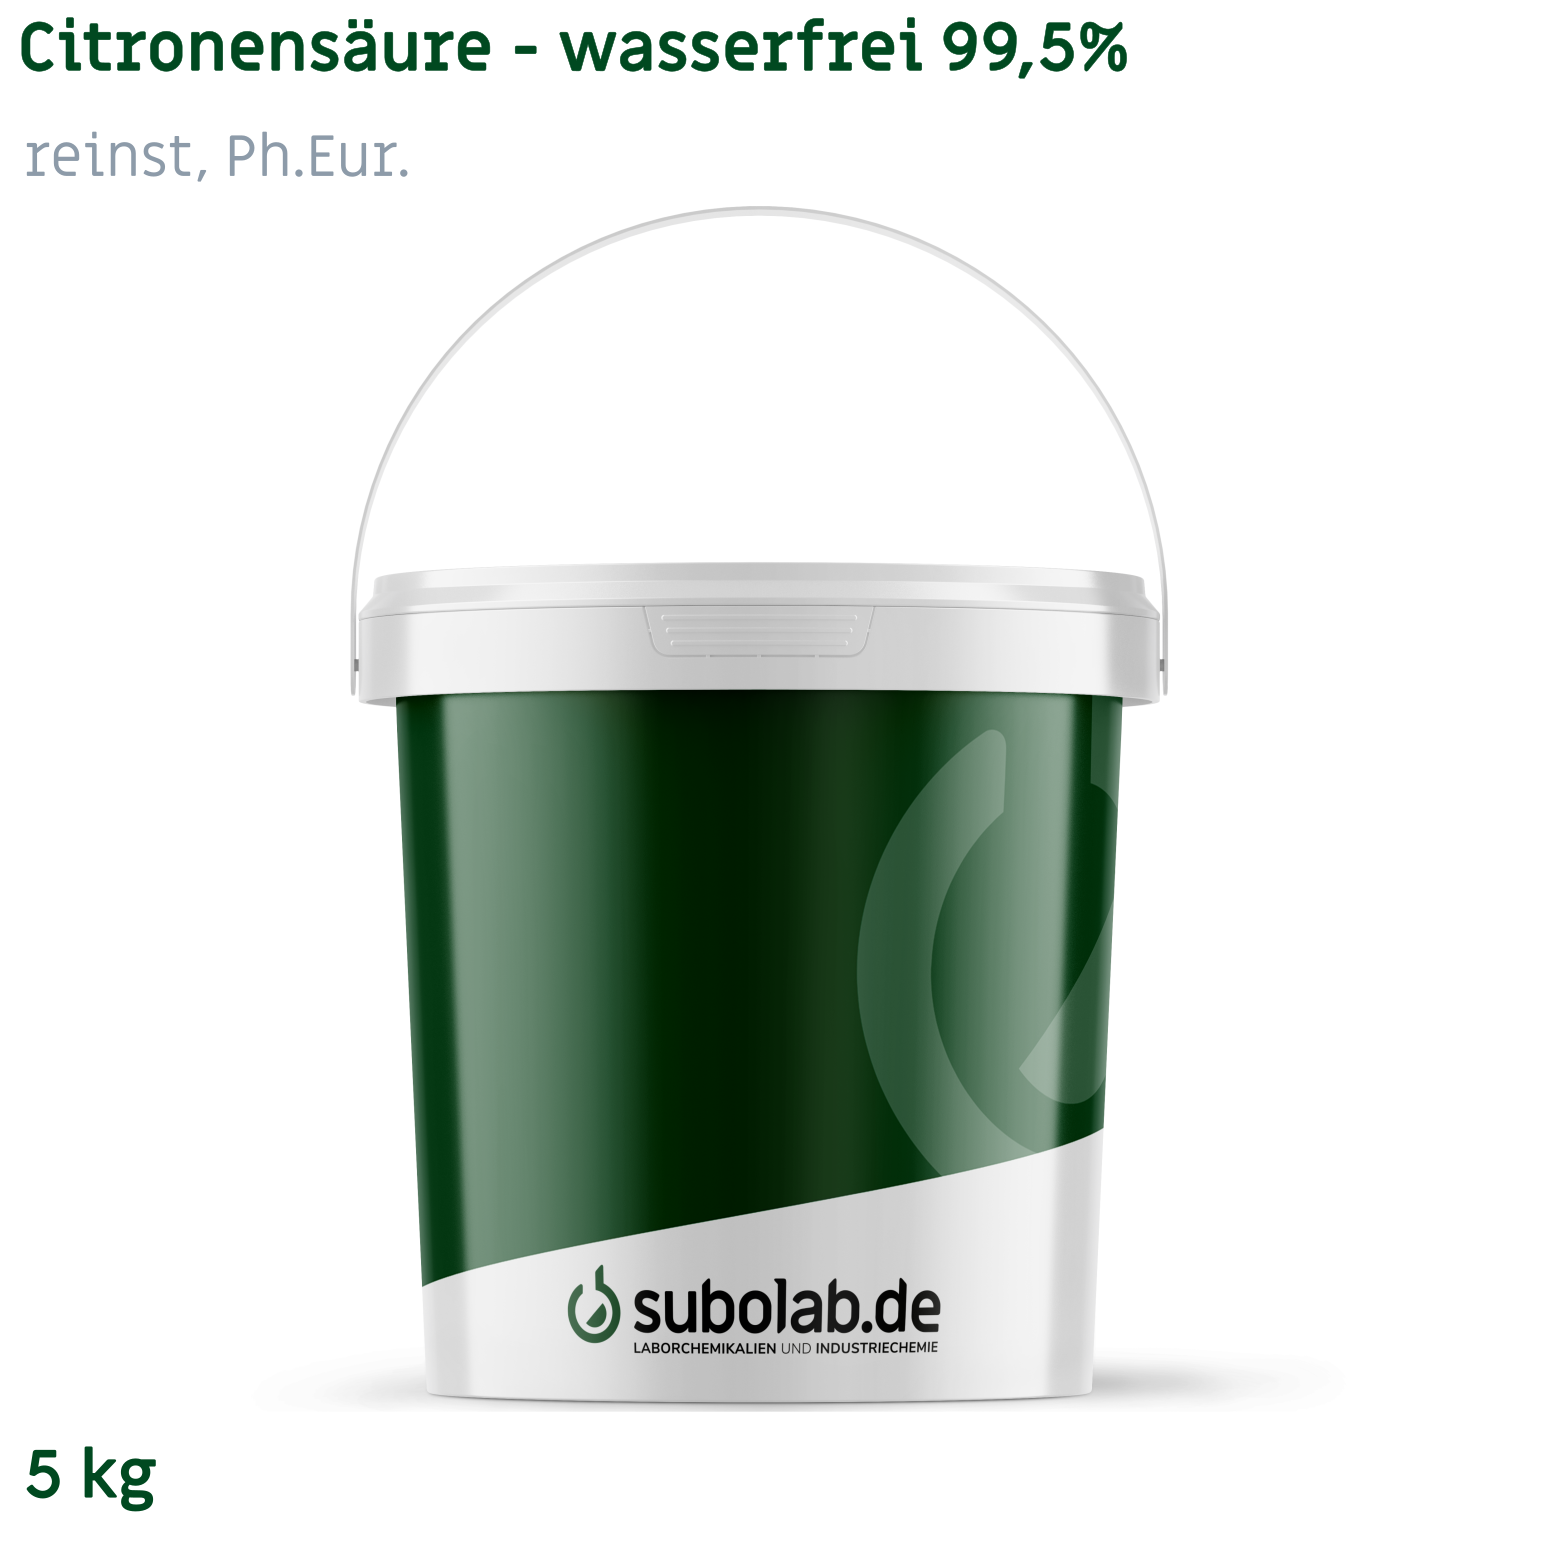 Bild von Citronensäure - wasserfrei 99,5% reinst, Ph.Eur. (5 kg)